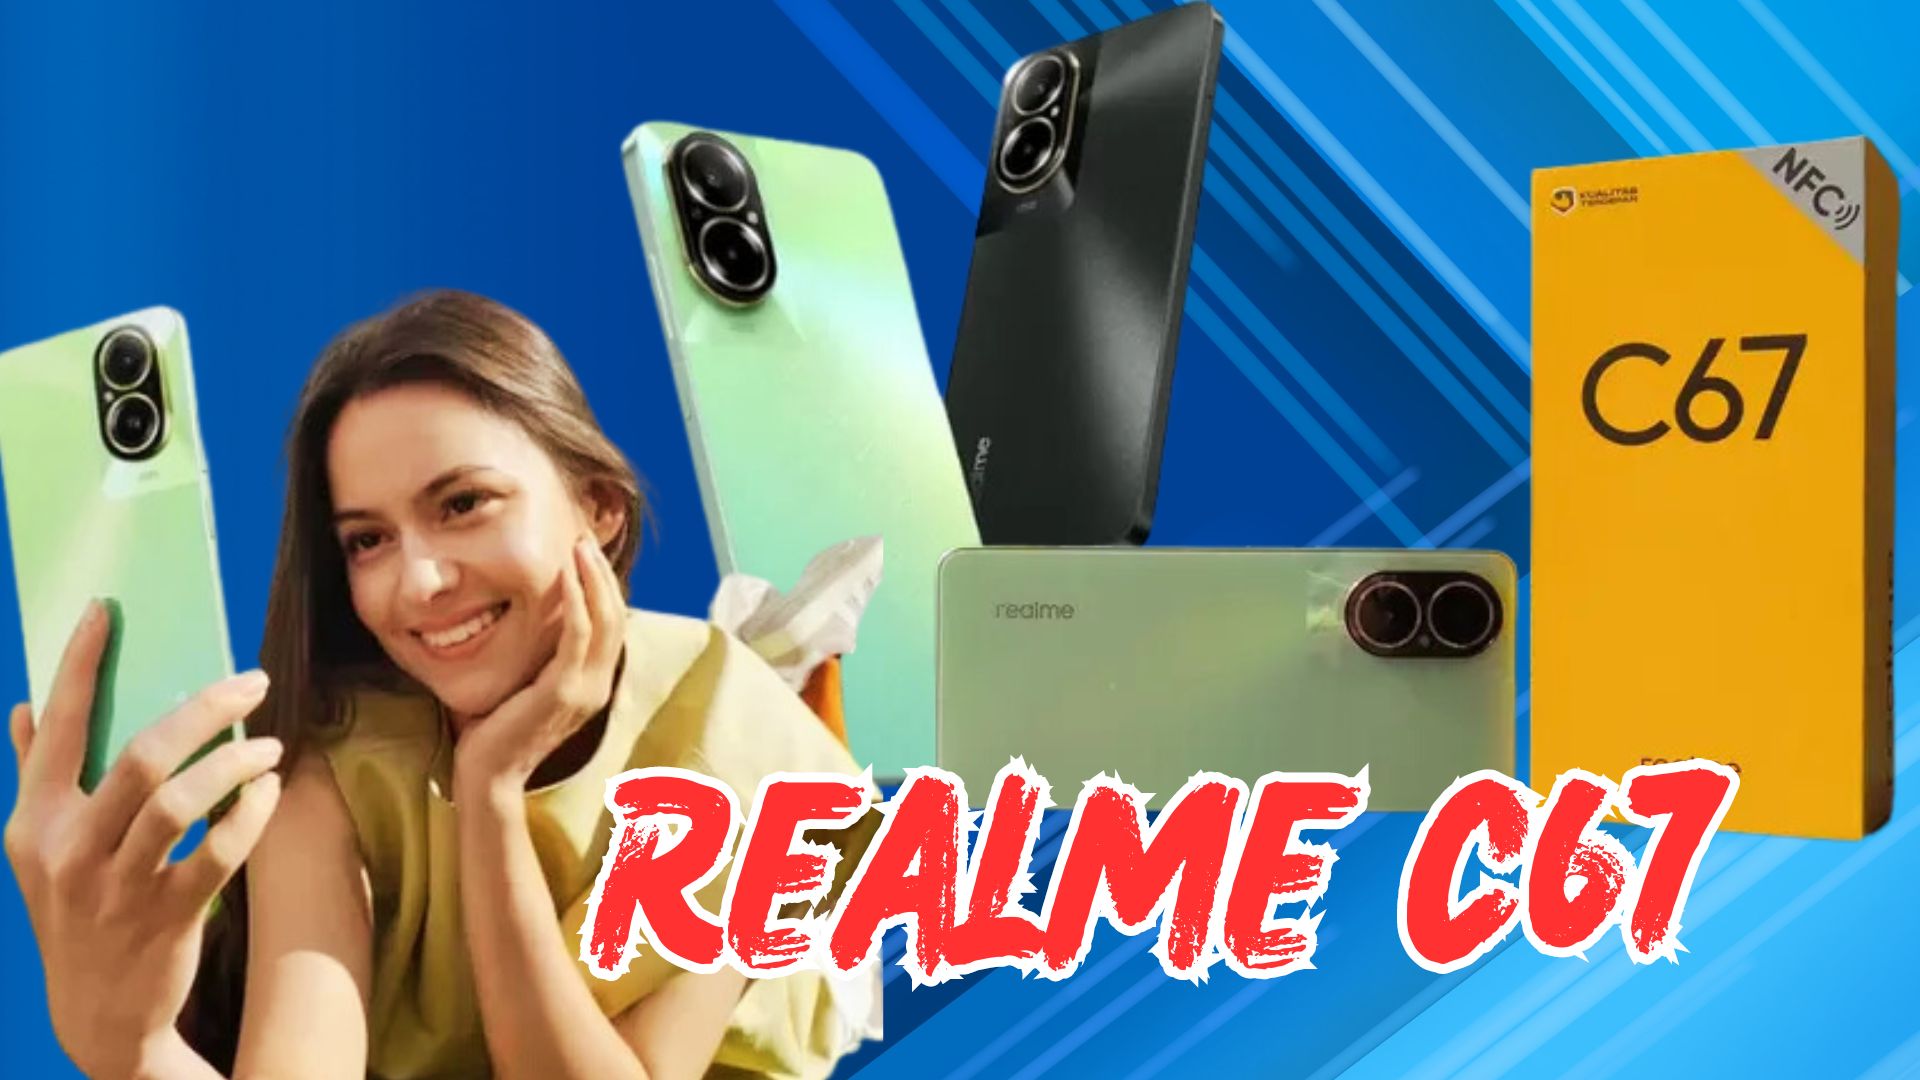 Realme C67: Harga dan Spesifikasi